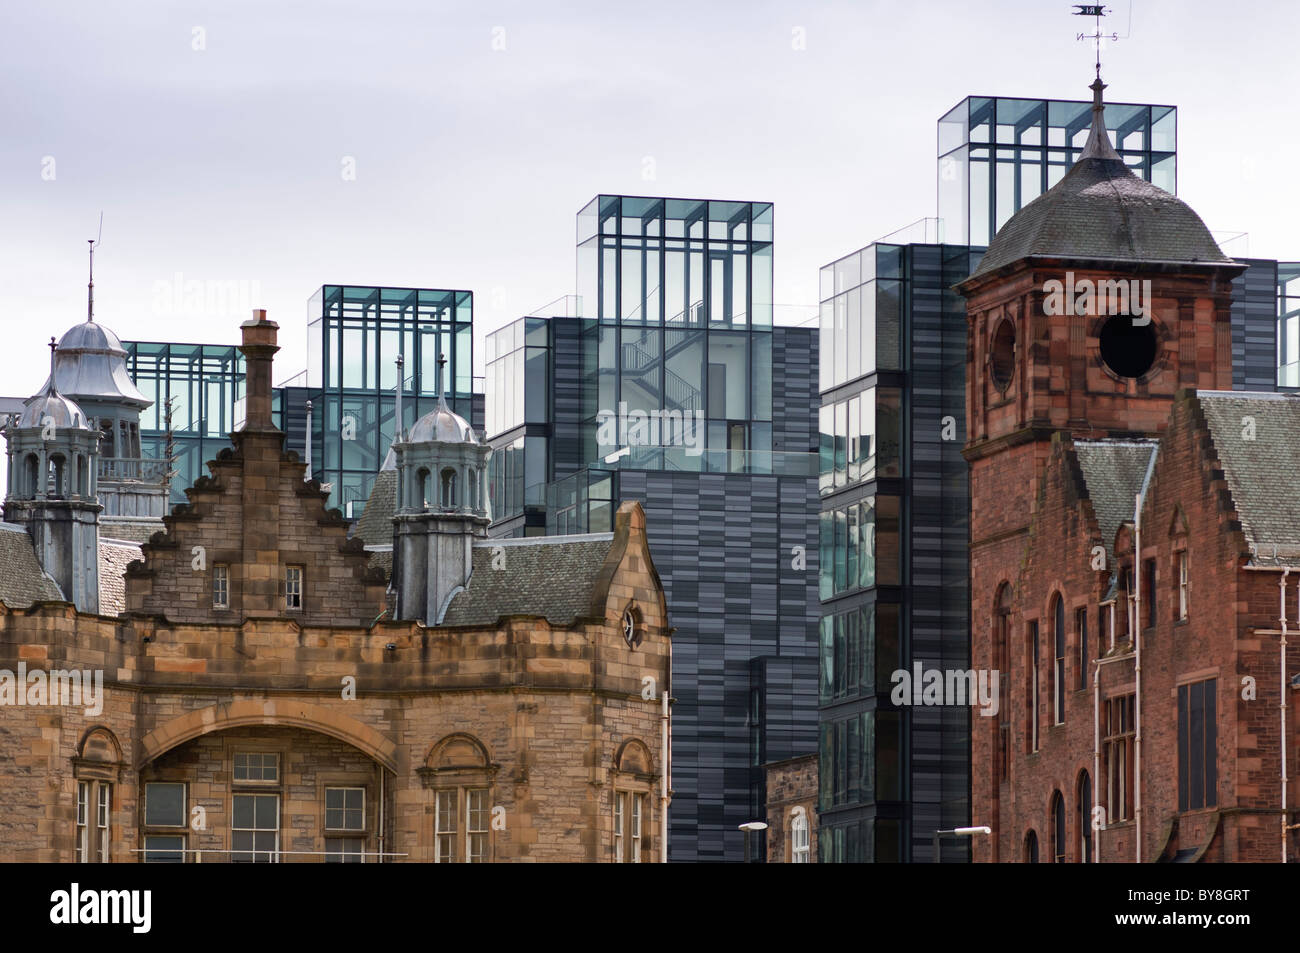 Sanierung bei Viertelmeile in Edinburgh produzieren starke Kontraste zwischen alt und neu. Schottland. Stockfoto